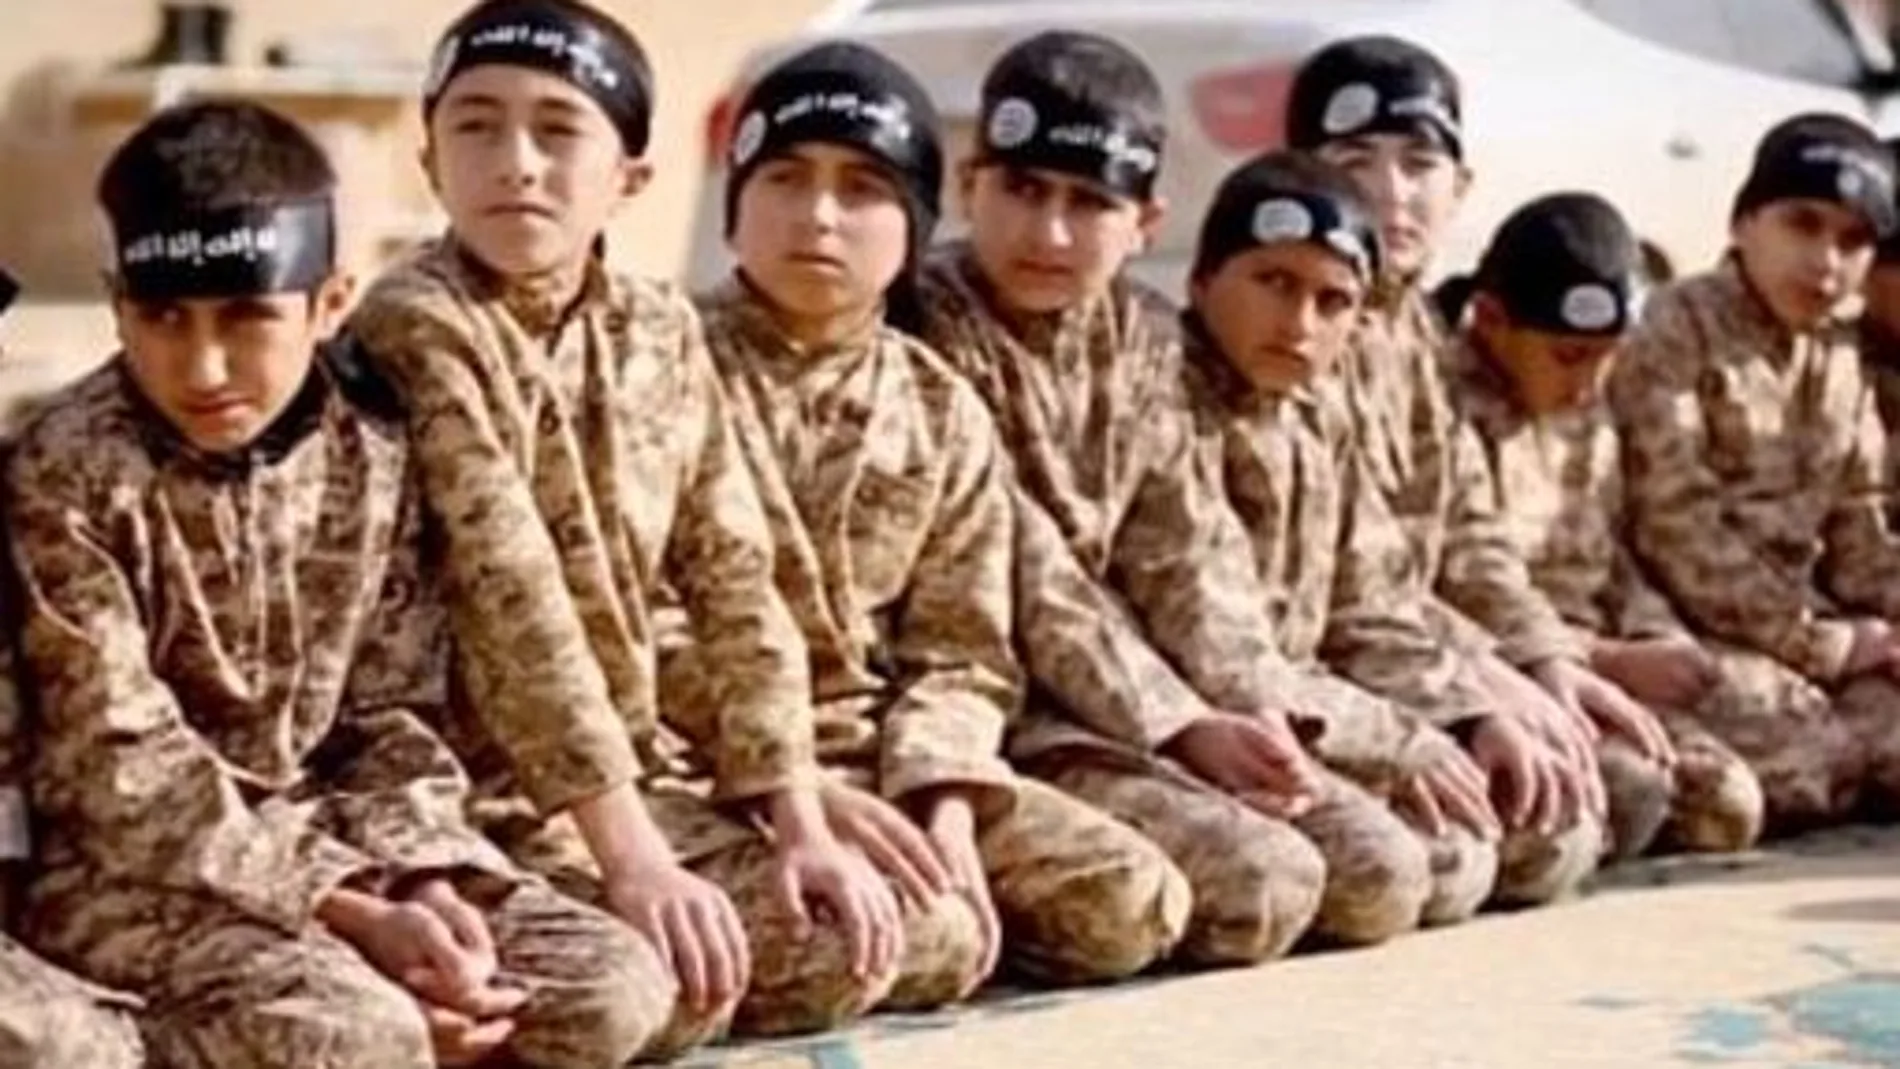 El Estado Islámico tiene como uno de sus objetivos el aleccionamiento de jóvenes.